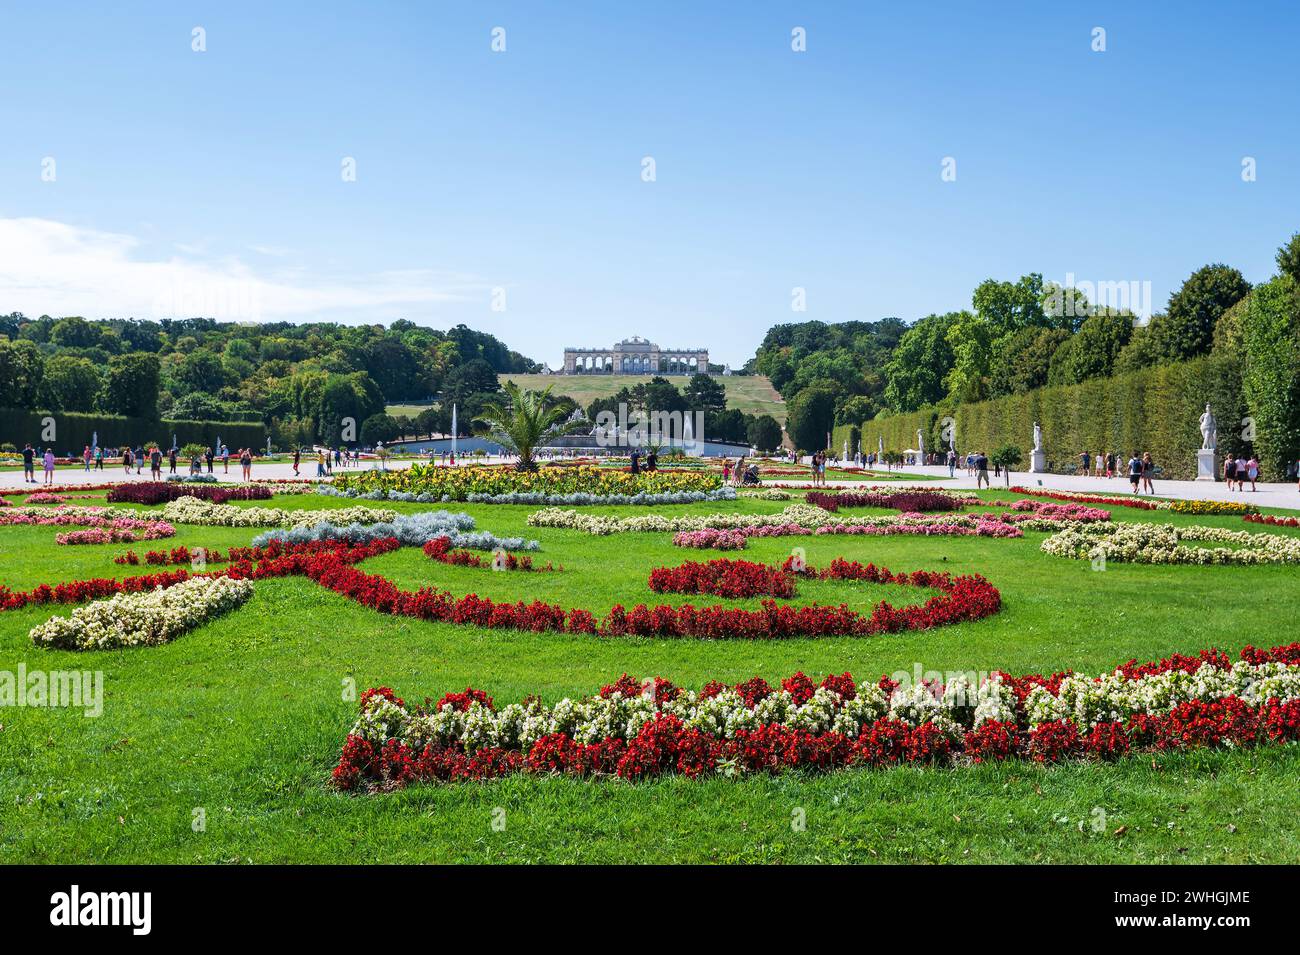 Vienne, Autriche - 12 août 2022 : jardin fleuri dans le palais Schonbrunn, la magnifique résidence d'été des dirigeants des Habsbourg à Vienne. Admirez-le Banque D'Images